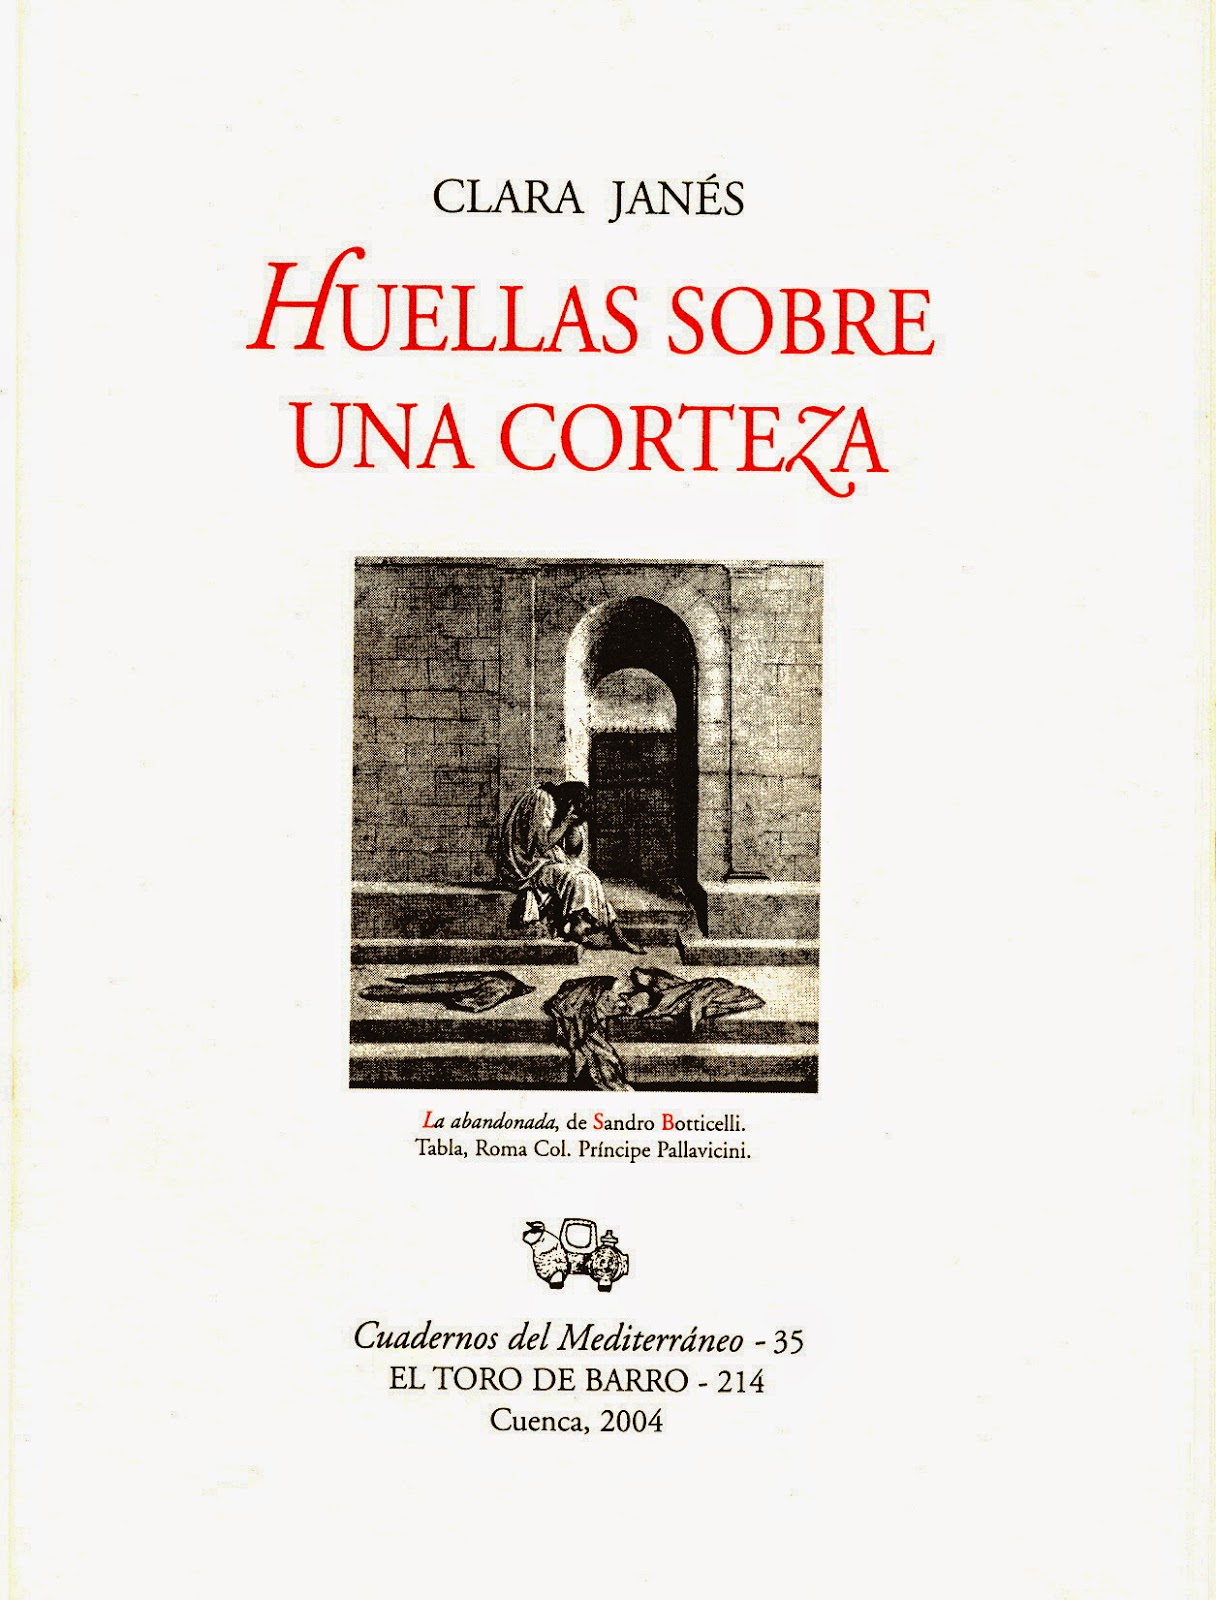 Clara Janés, "Huellas sobre una corteza". Col «Cuadernos del Mediterráneo»,. Carlos Morales del Coso Ed.,  Ed. El Toro de Barro, Tarancón de Cuenca 2004.